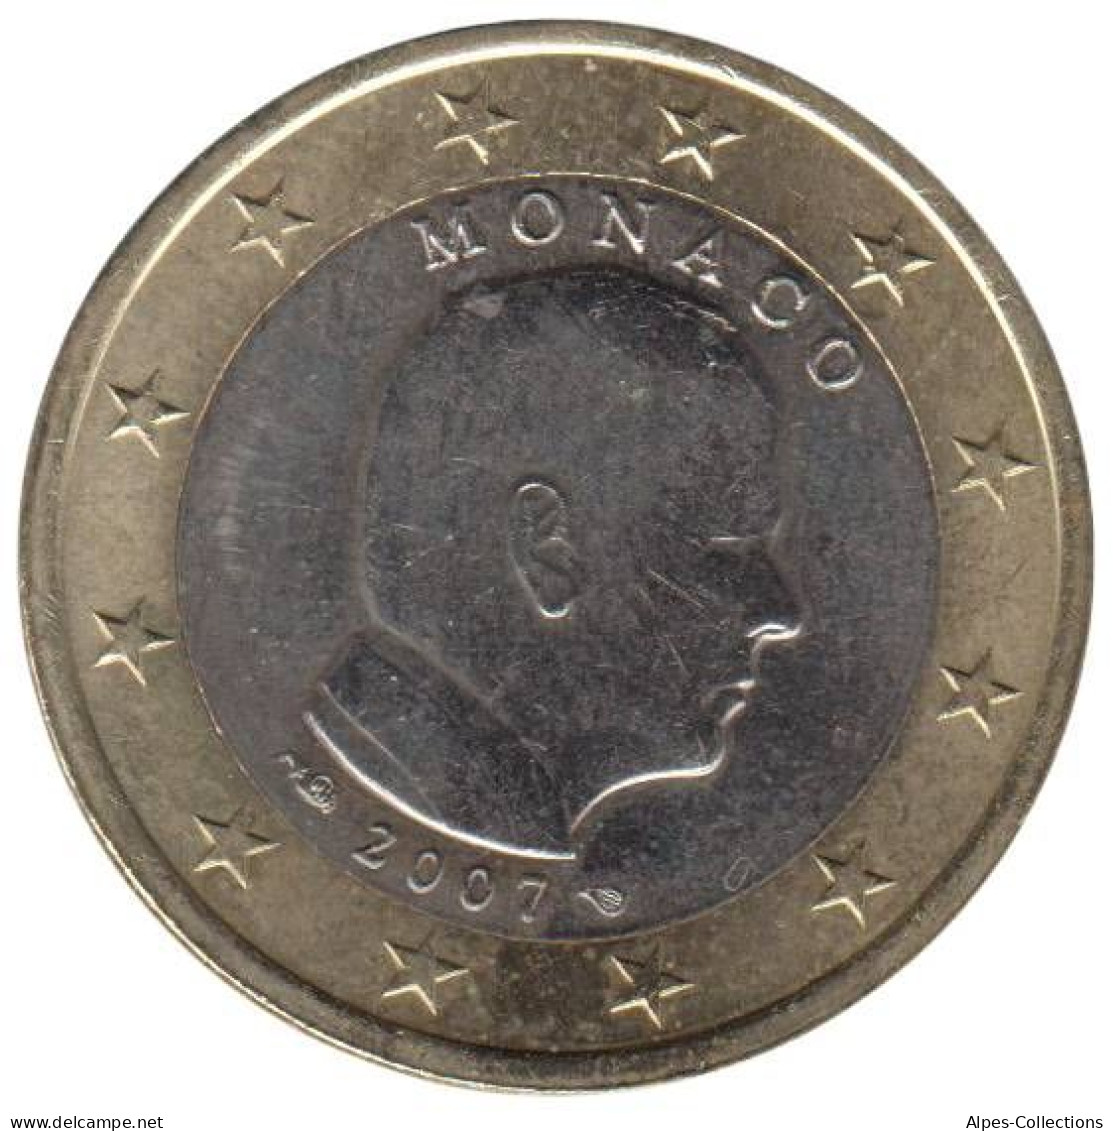 MO10007.1 - MONACO - 1 Euro - 2007 - Monaco